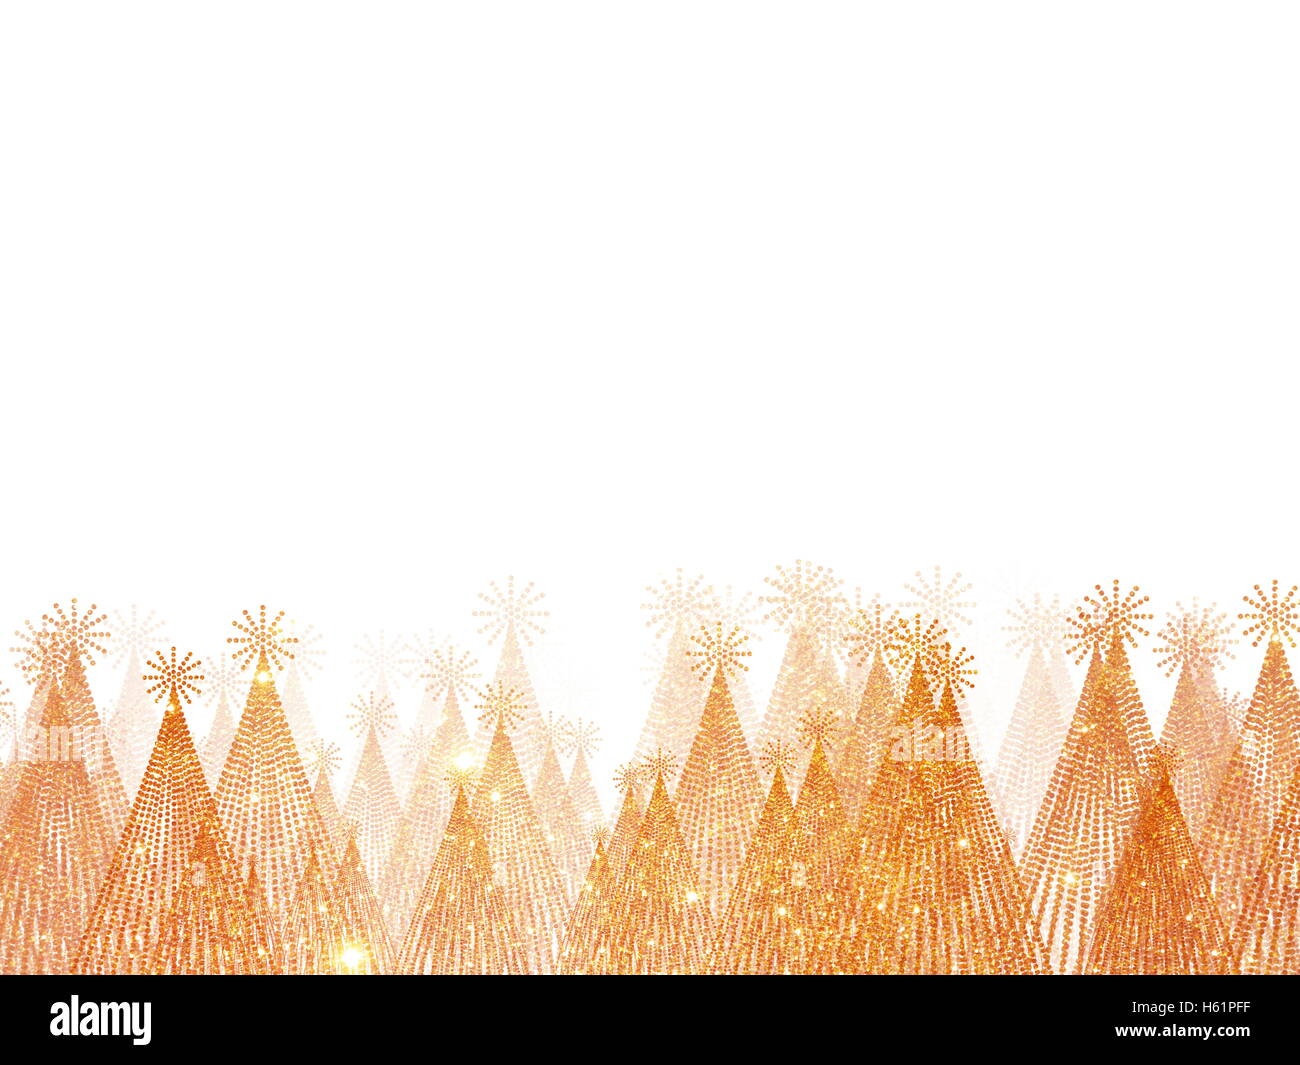 Weihnachtsbaum wallpaper für Urlaub oder Veranstaltung Stockfoto